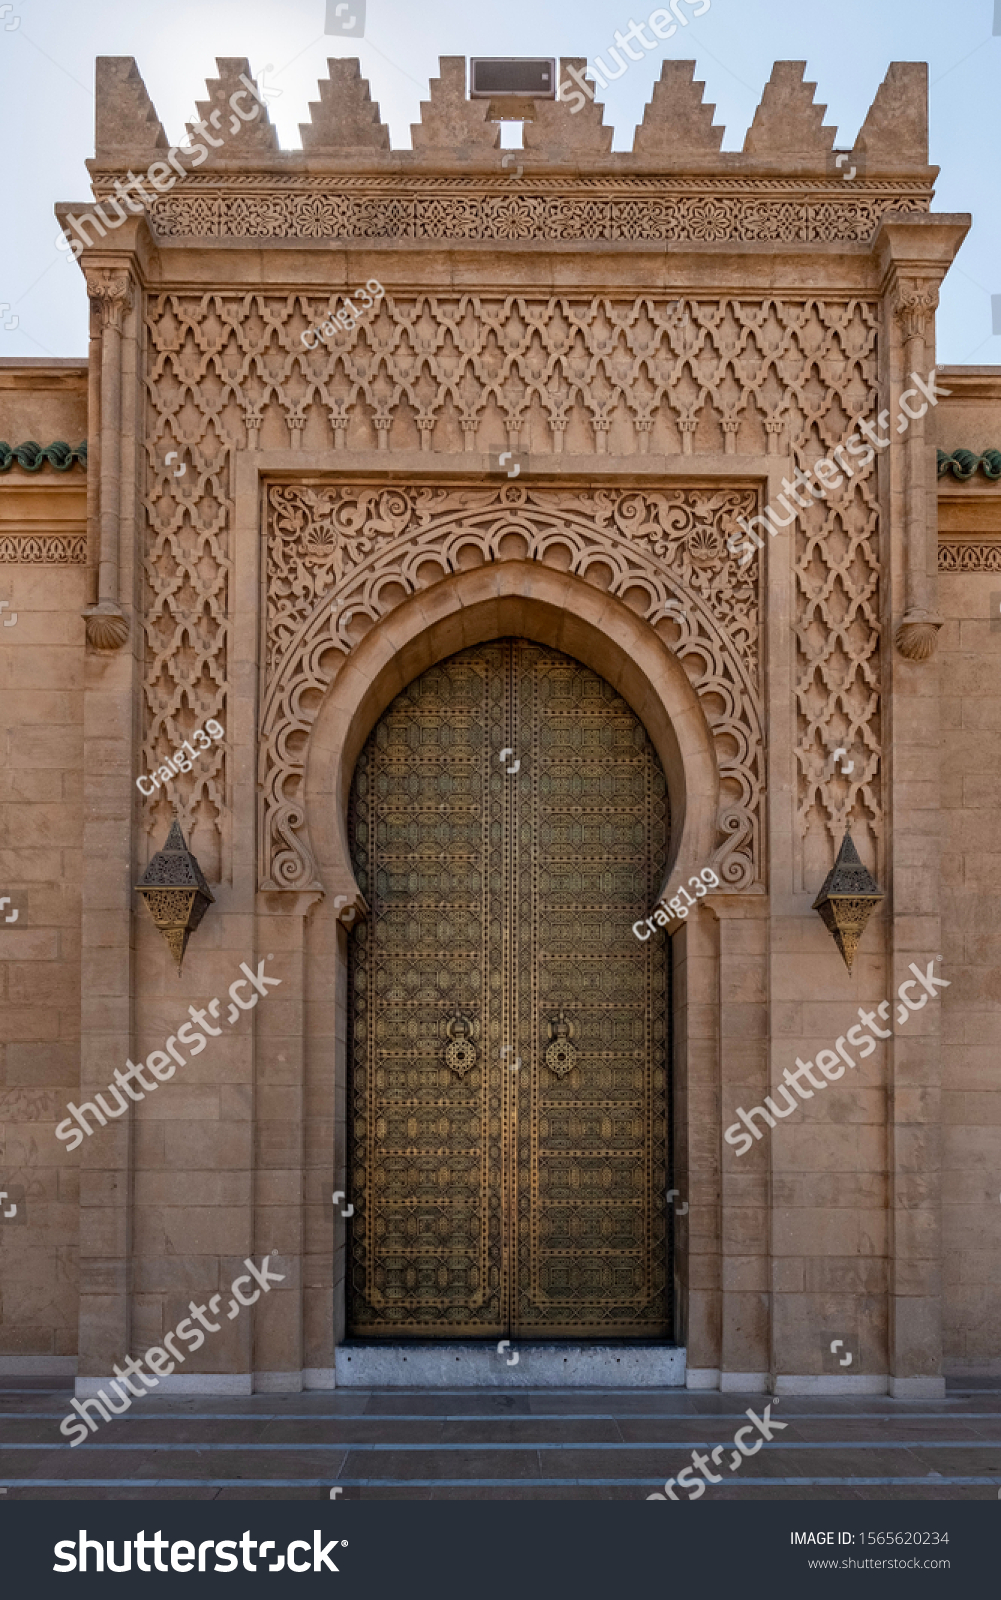 Golden door in Rabat Morocco. Photo taken at the Hassan Tower and Mosque in Rabat.  #1565620234